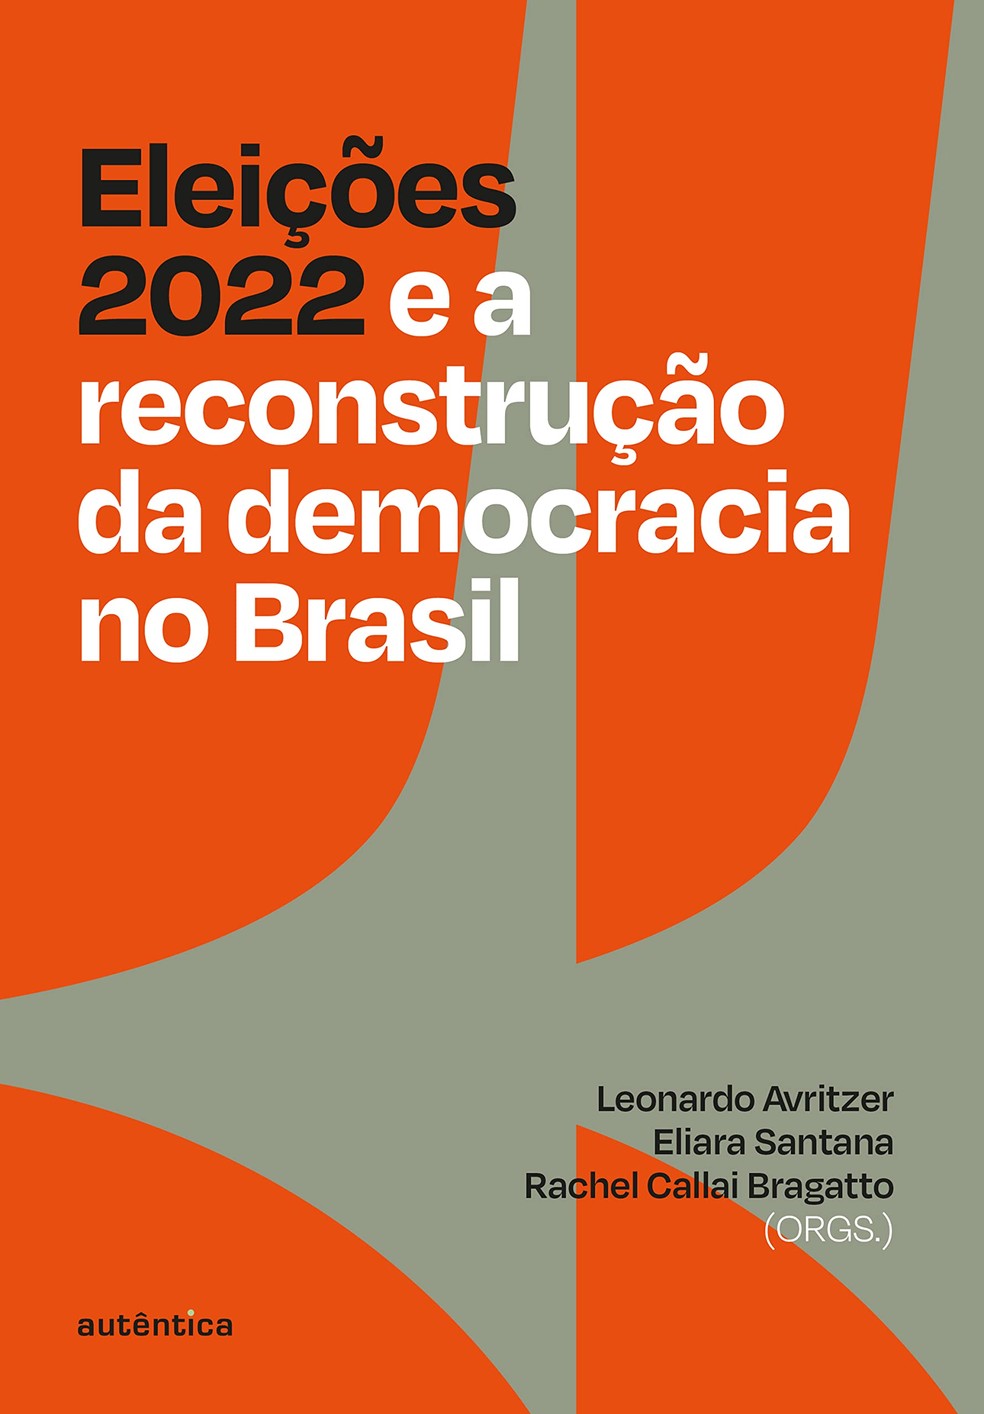 Eleições 2022 e a reconstrução da democracia no Brasil, organizado por Leonardo Avritzer, Eliara Santana e Rachel Callai Bragatto — Foto: Divulgação